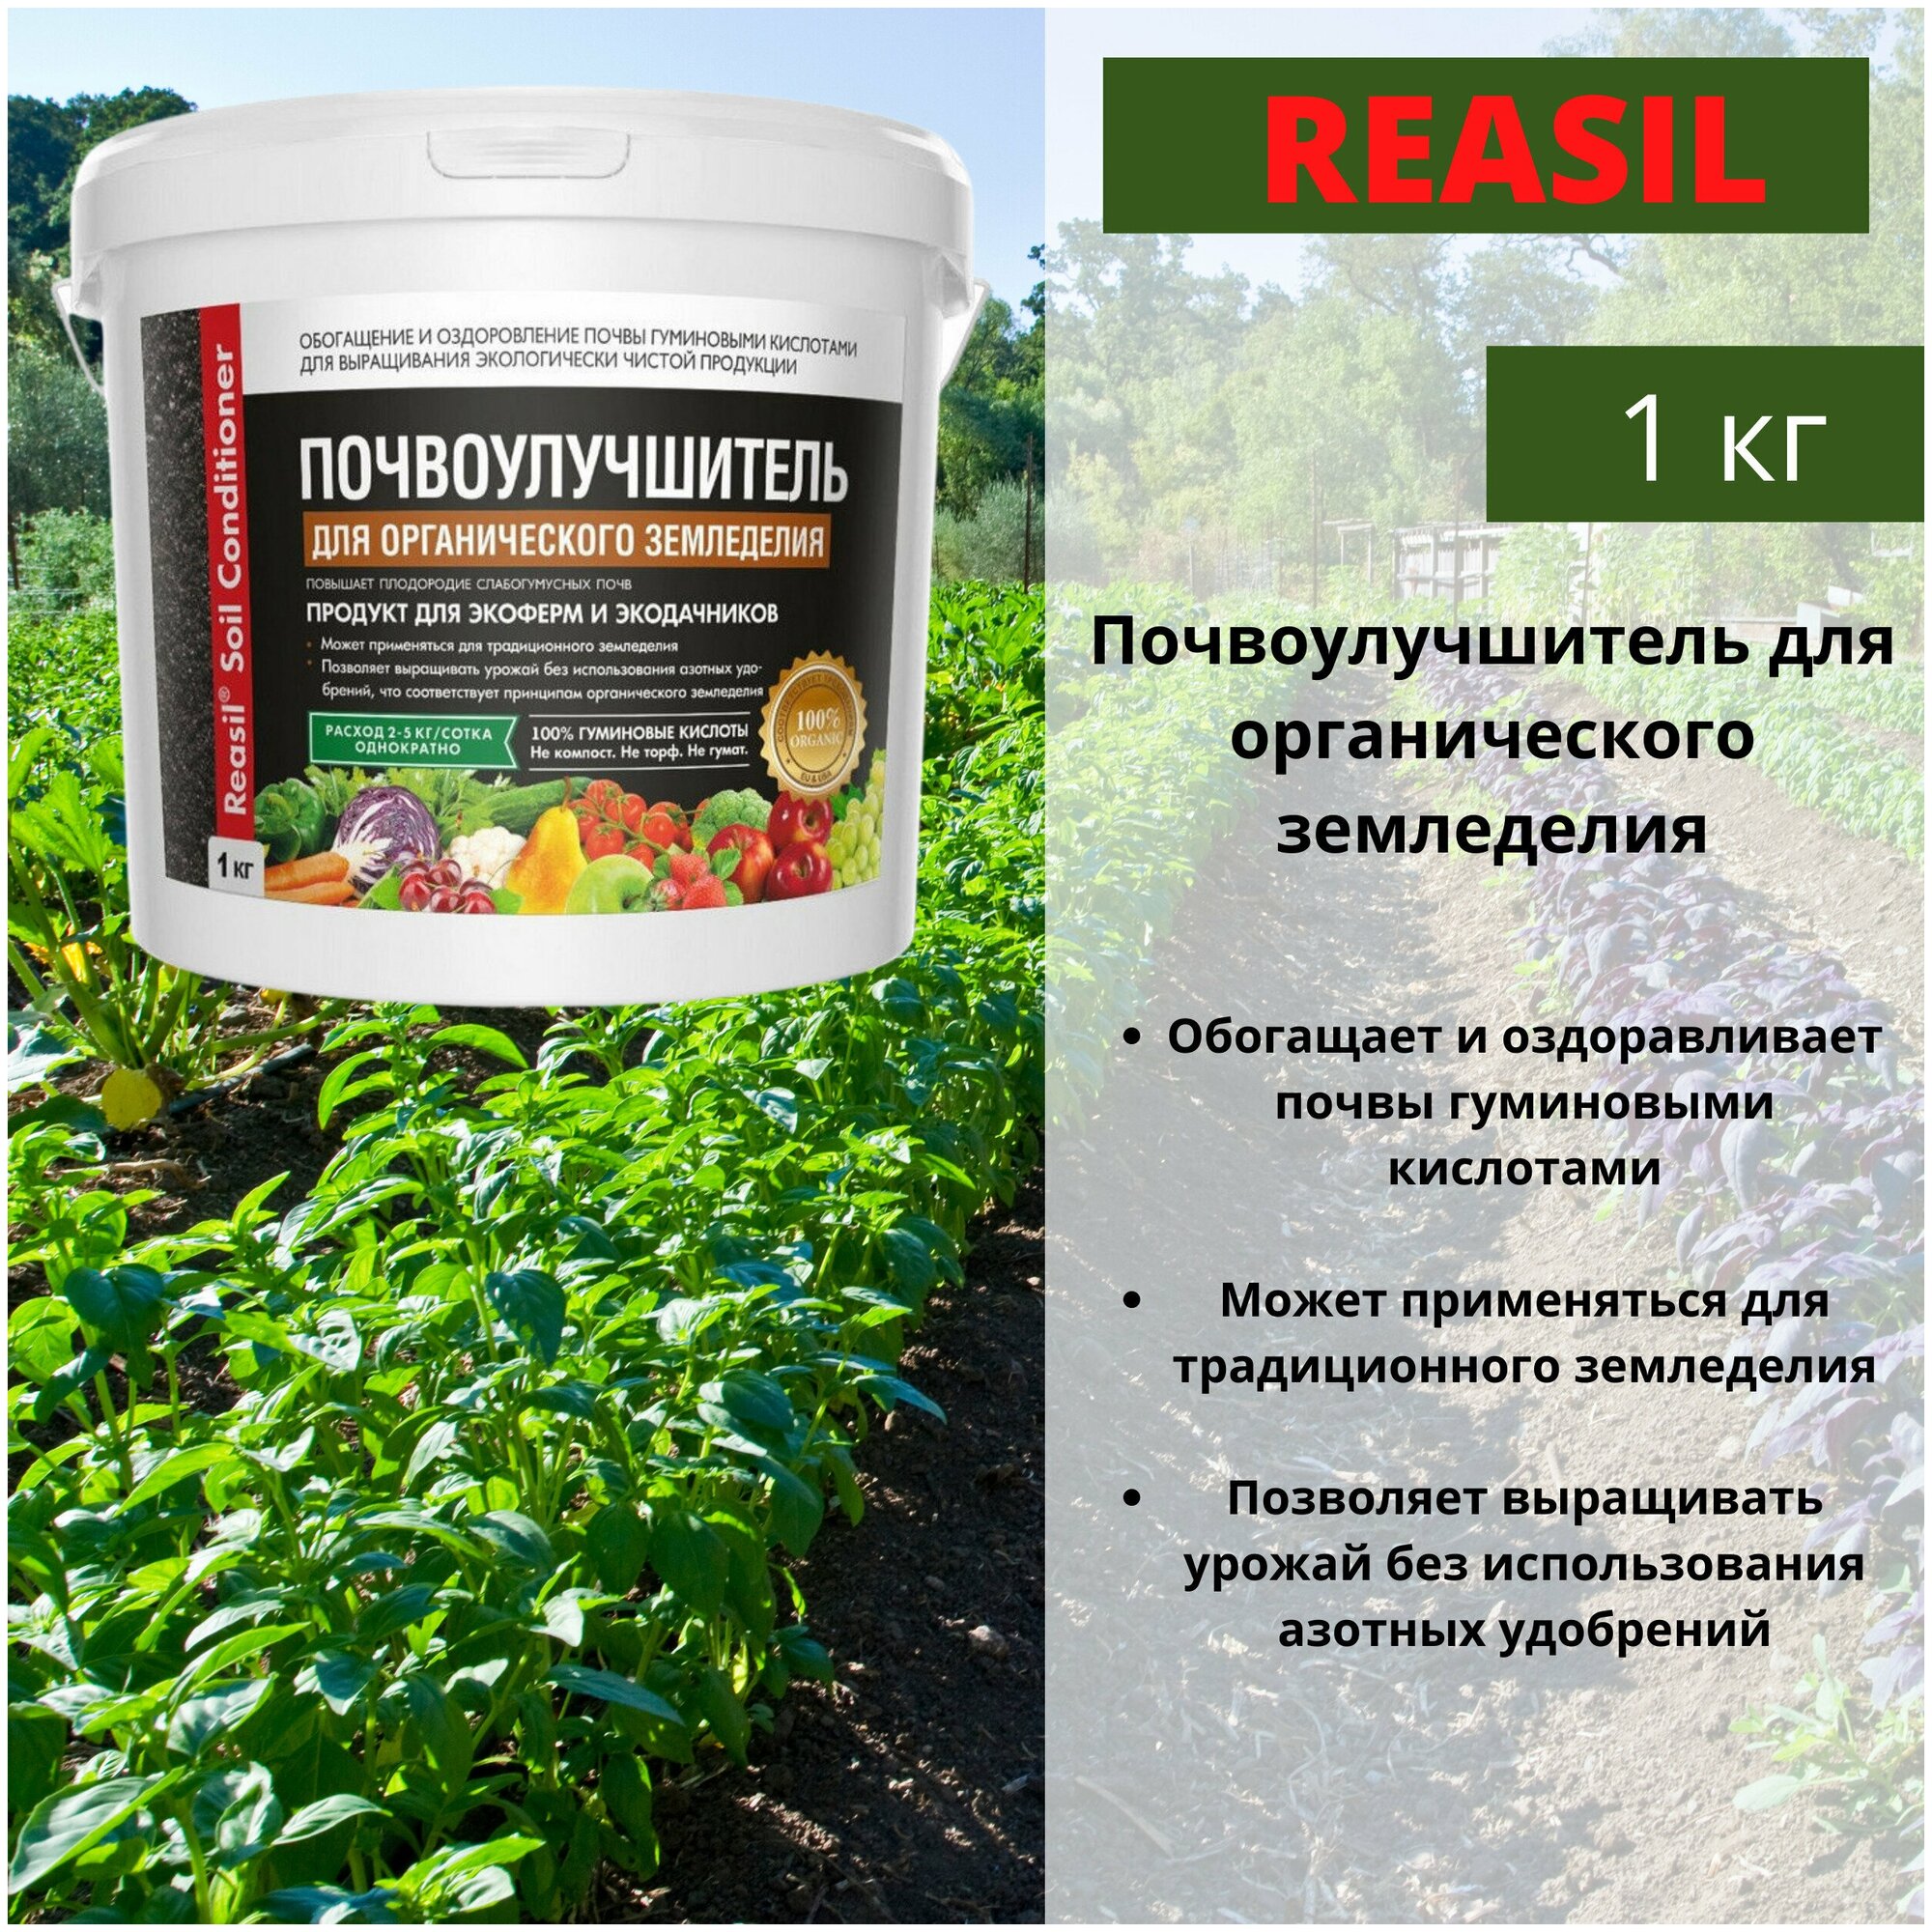 Комплексное органоминеральное удобрение "REASIL Почвоулучшитель для органического земледелия" 1 кг